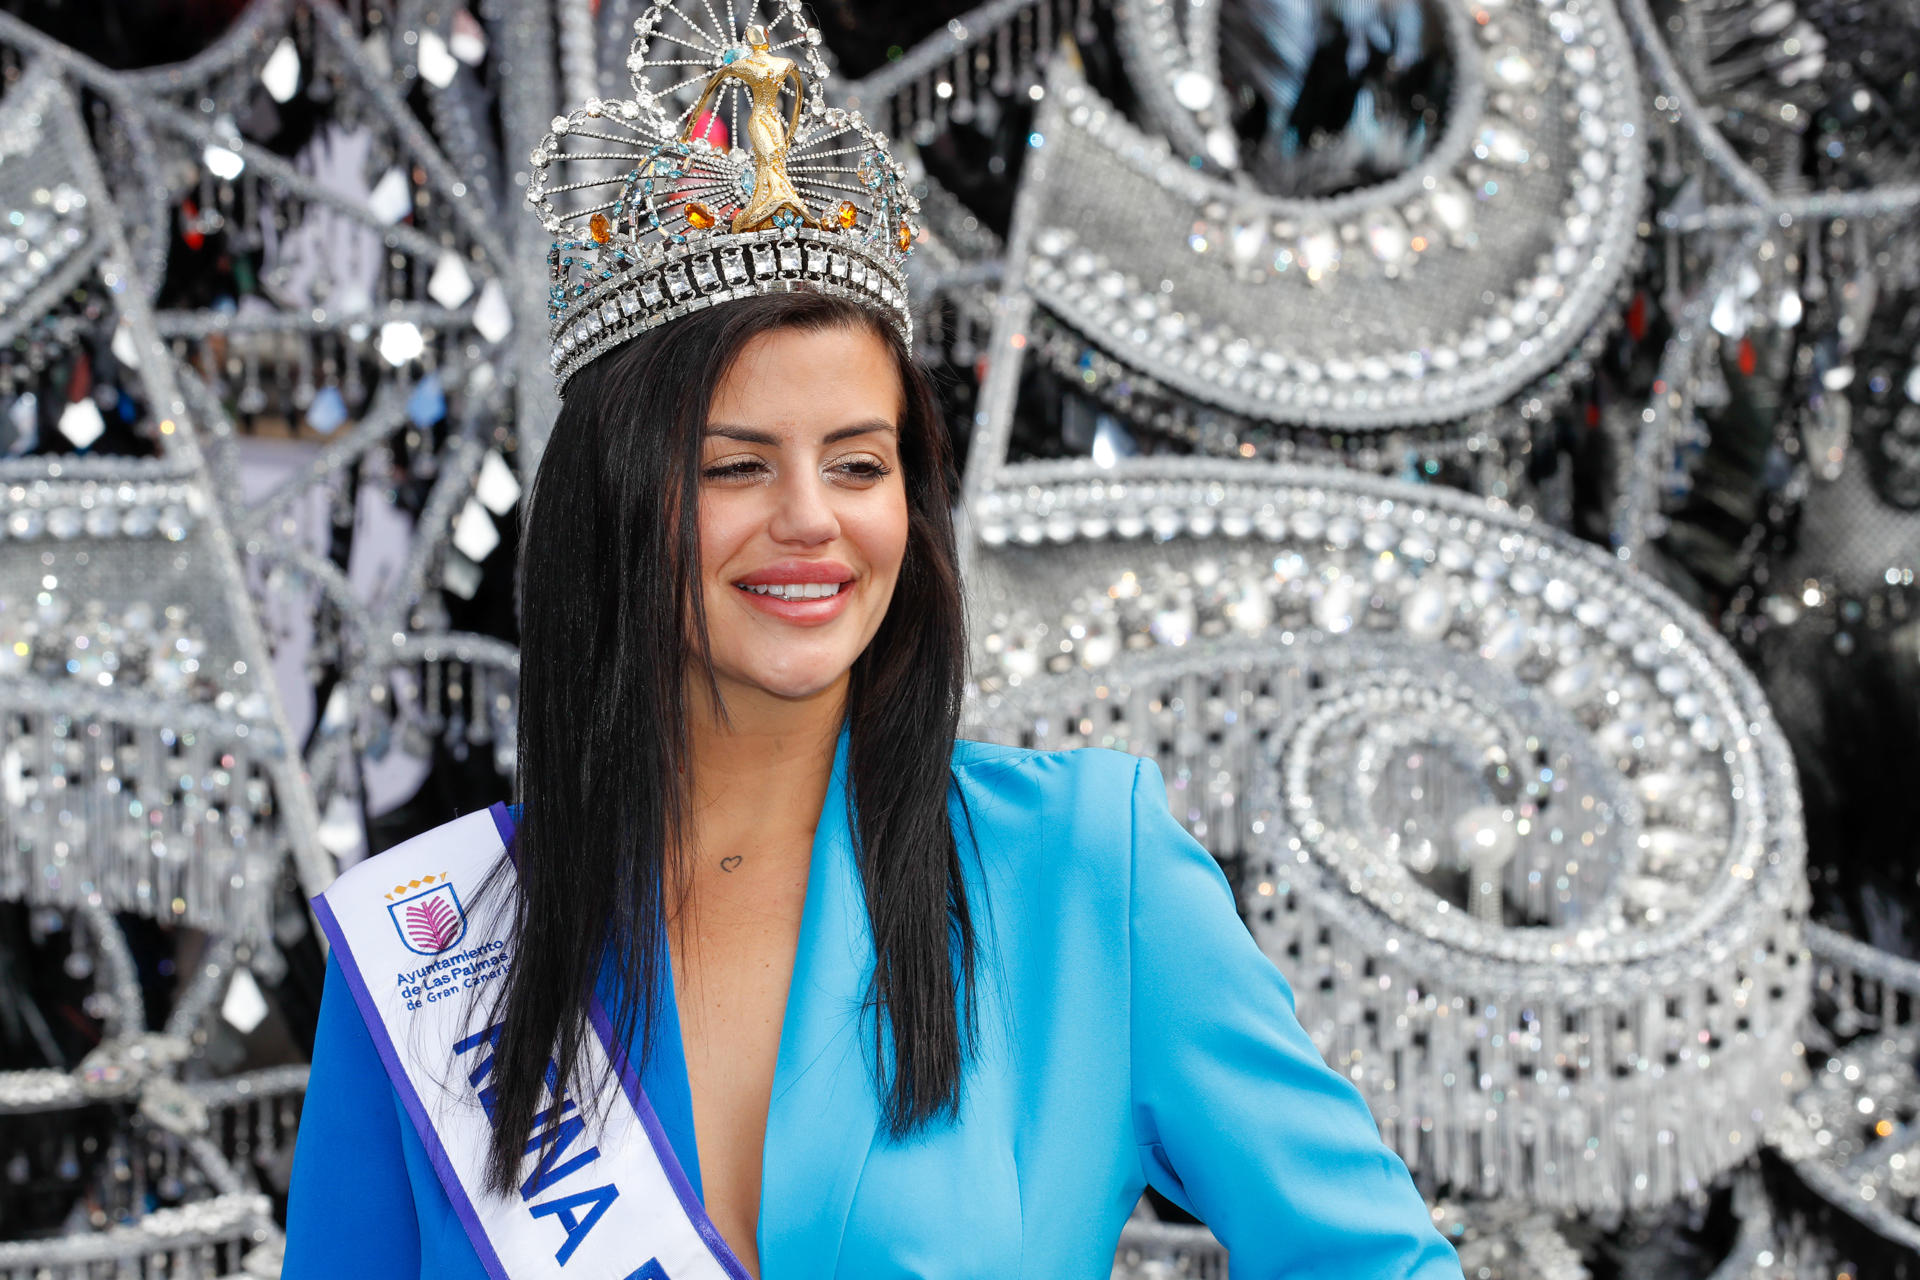 La Reina del Carnaval 2023 de Las de Gran Canaria soñaba desde niña con esta corona - Noticias